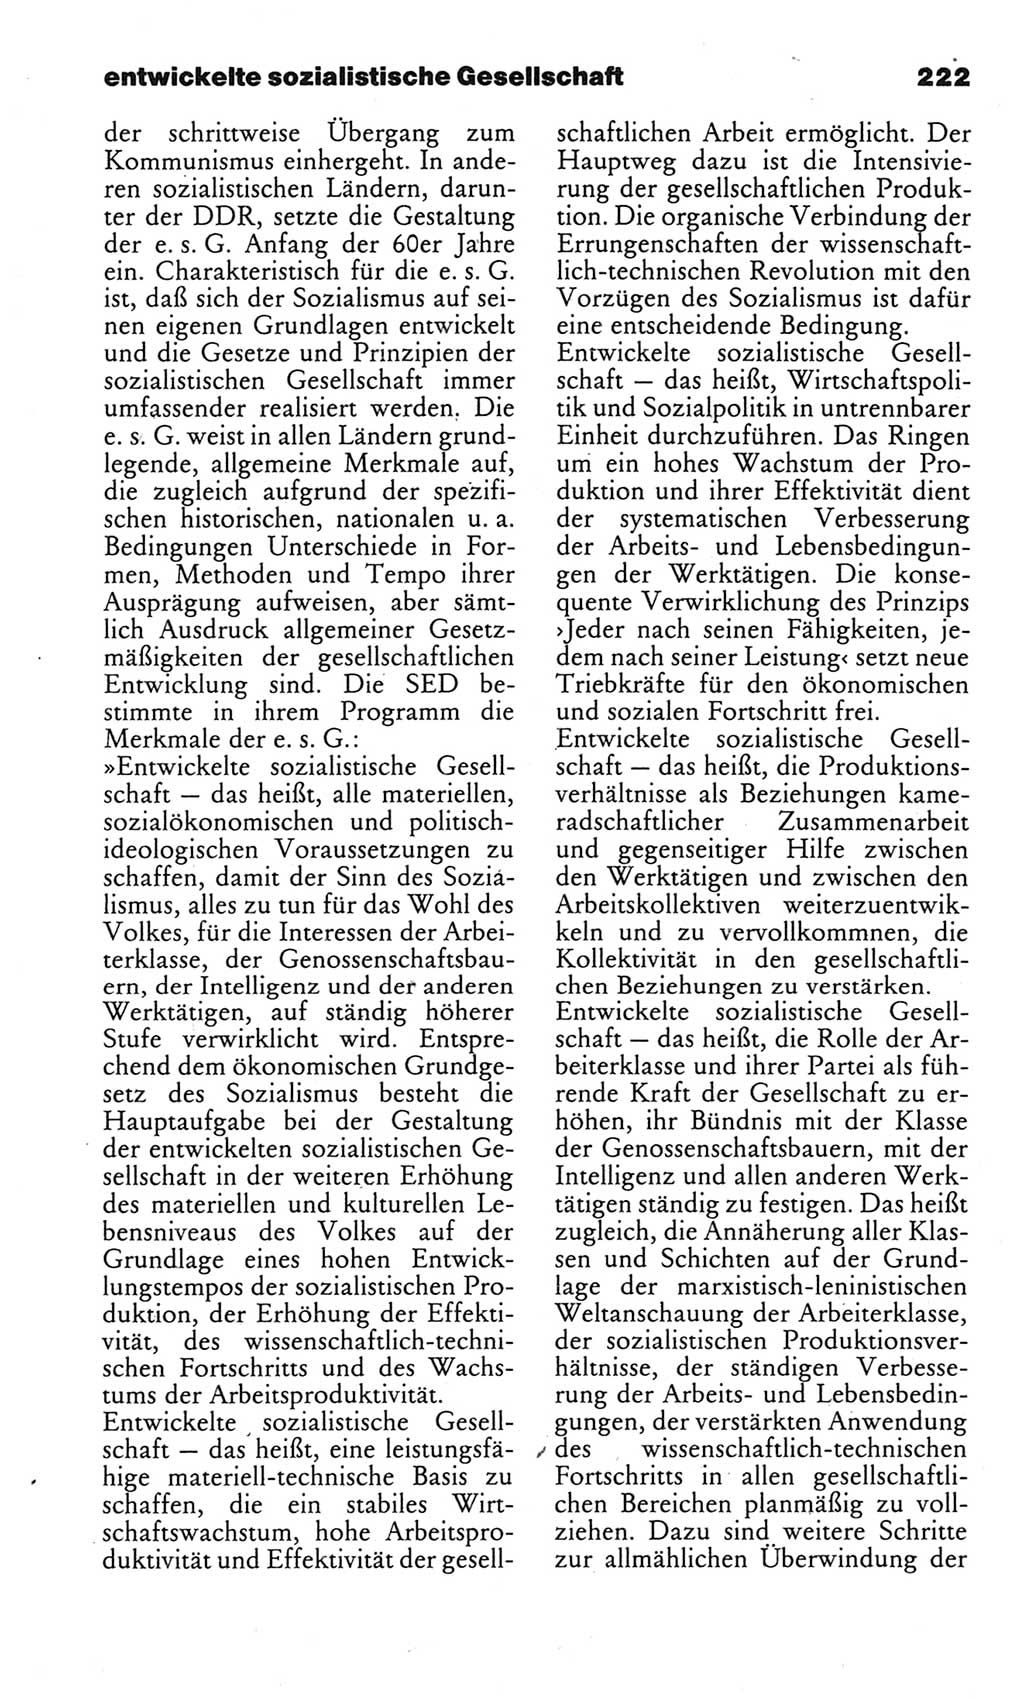 Kleines politisches Wörterbuch [Deutsche Demokratische Republik (DDR)] 1983, Seite 222 (Kl. pol. Wb. DDR 1983, S. 222)